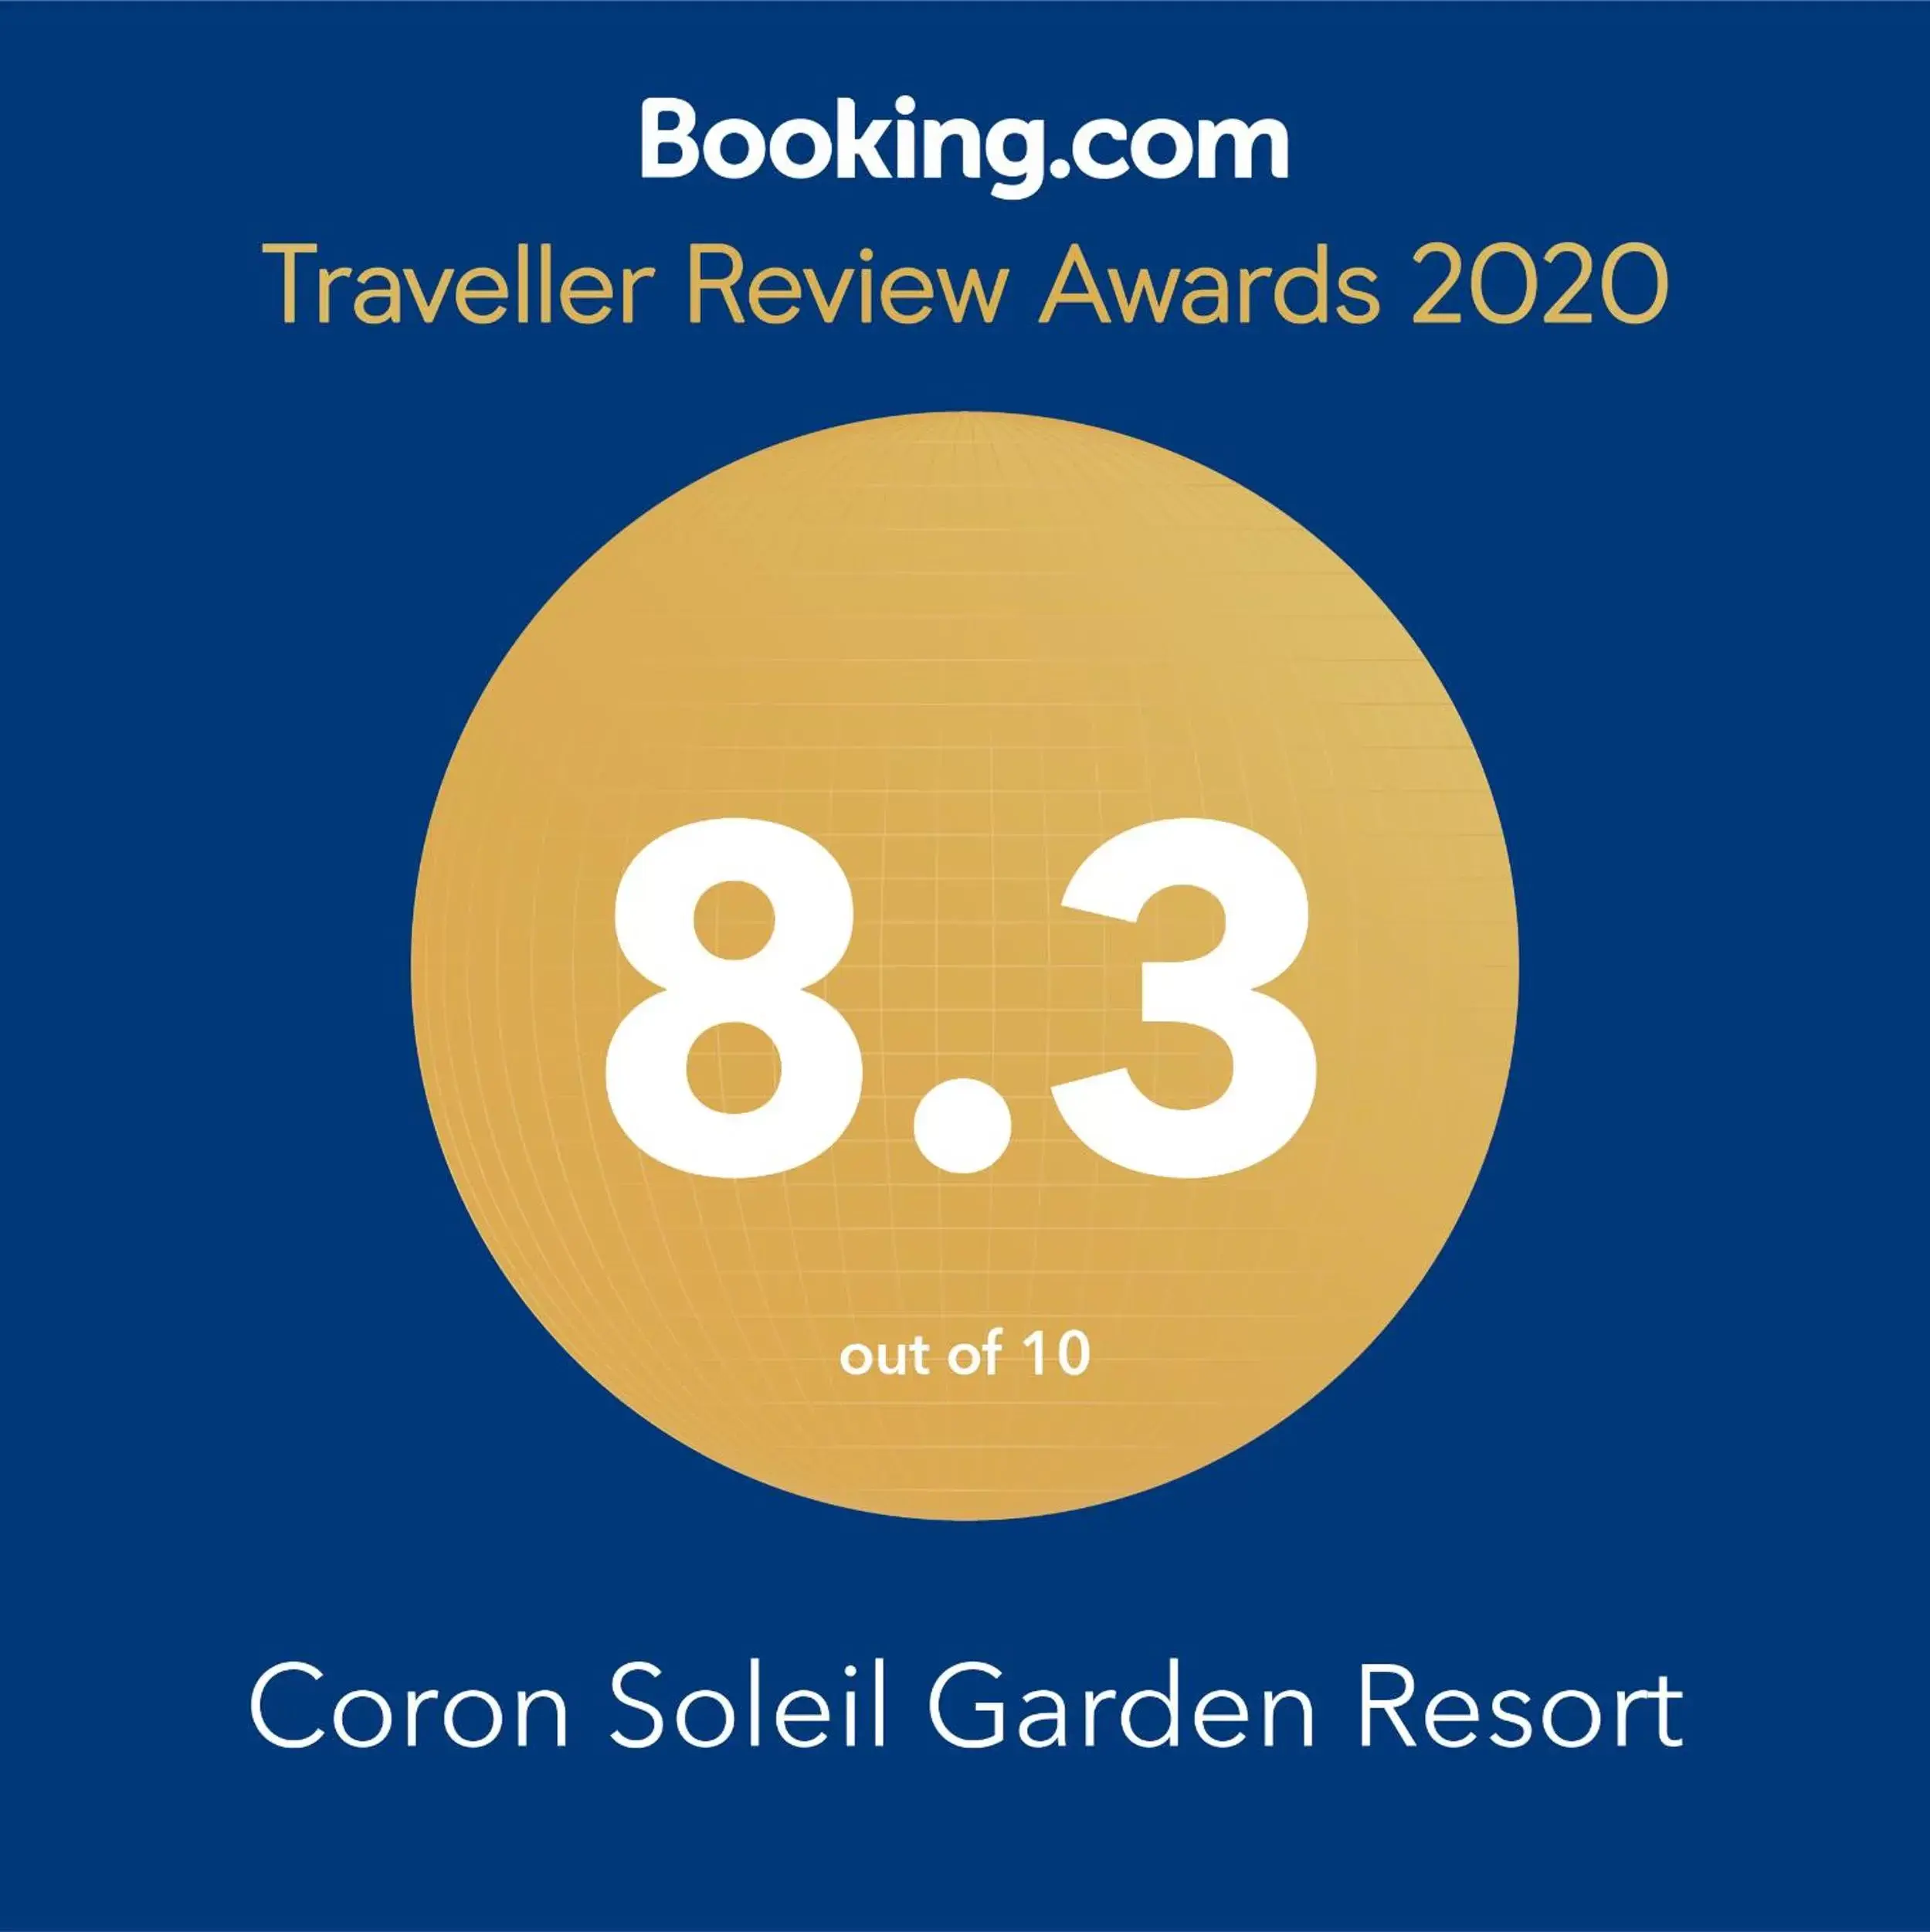 Certificate/Award in Coron Soleil Garden Resort